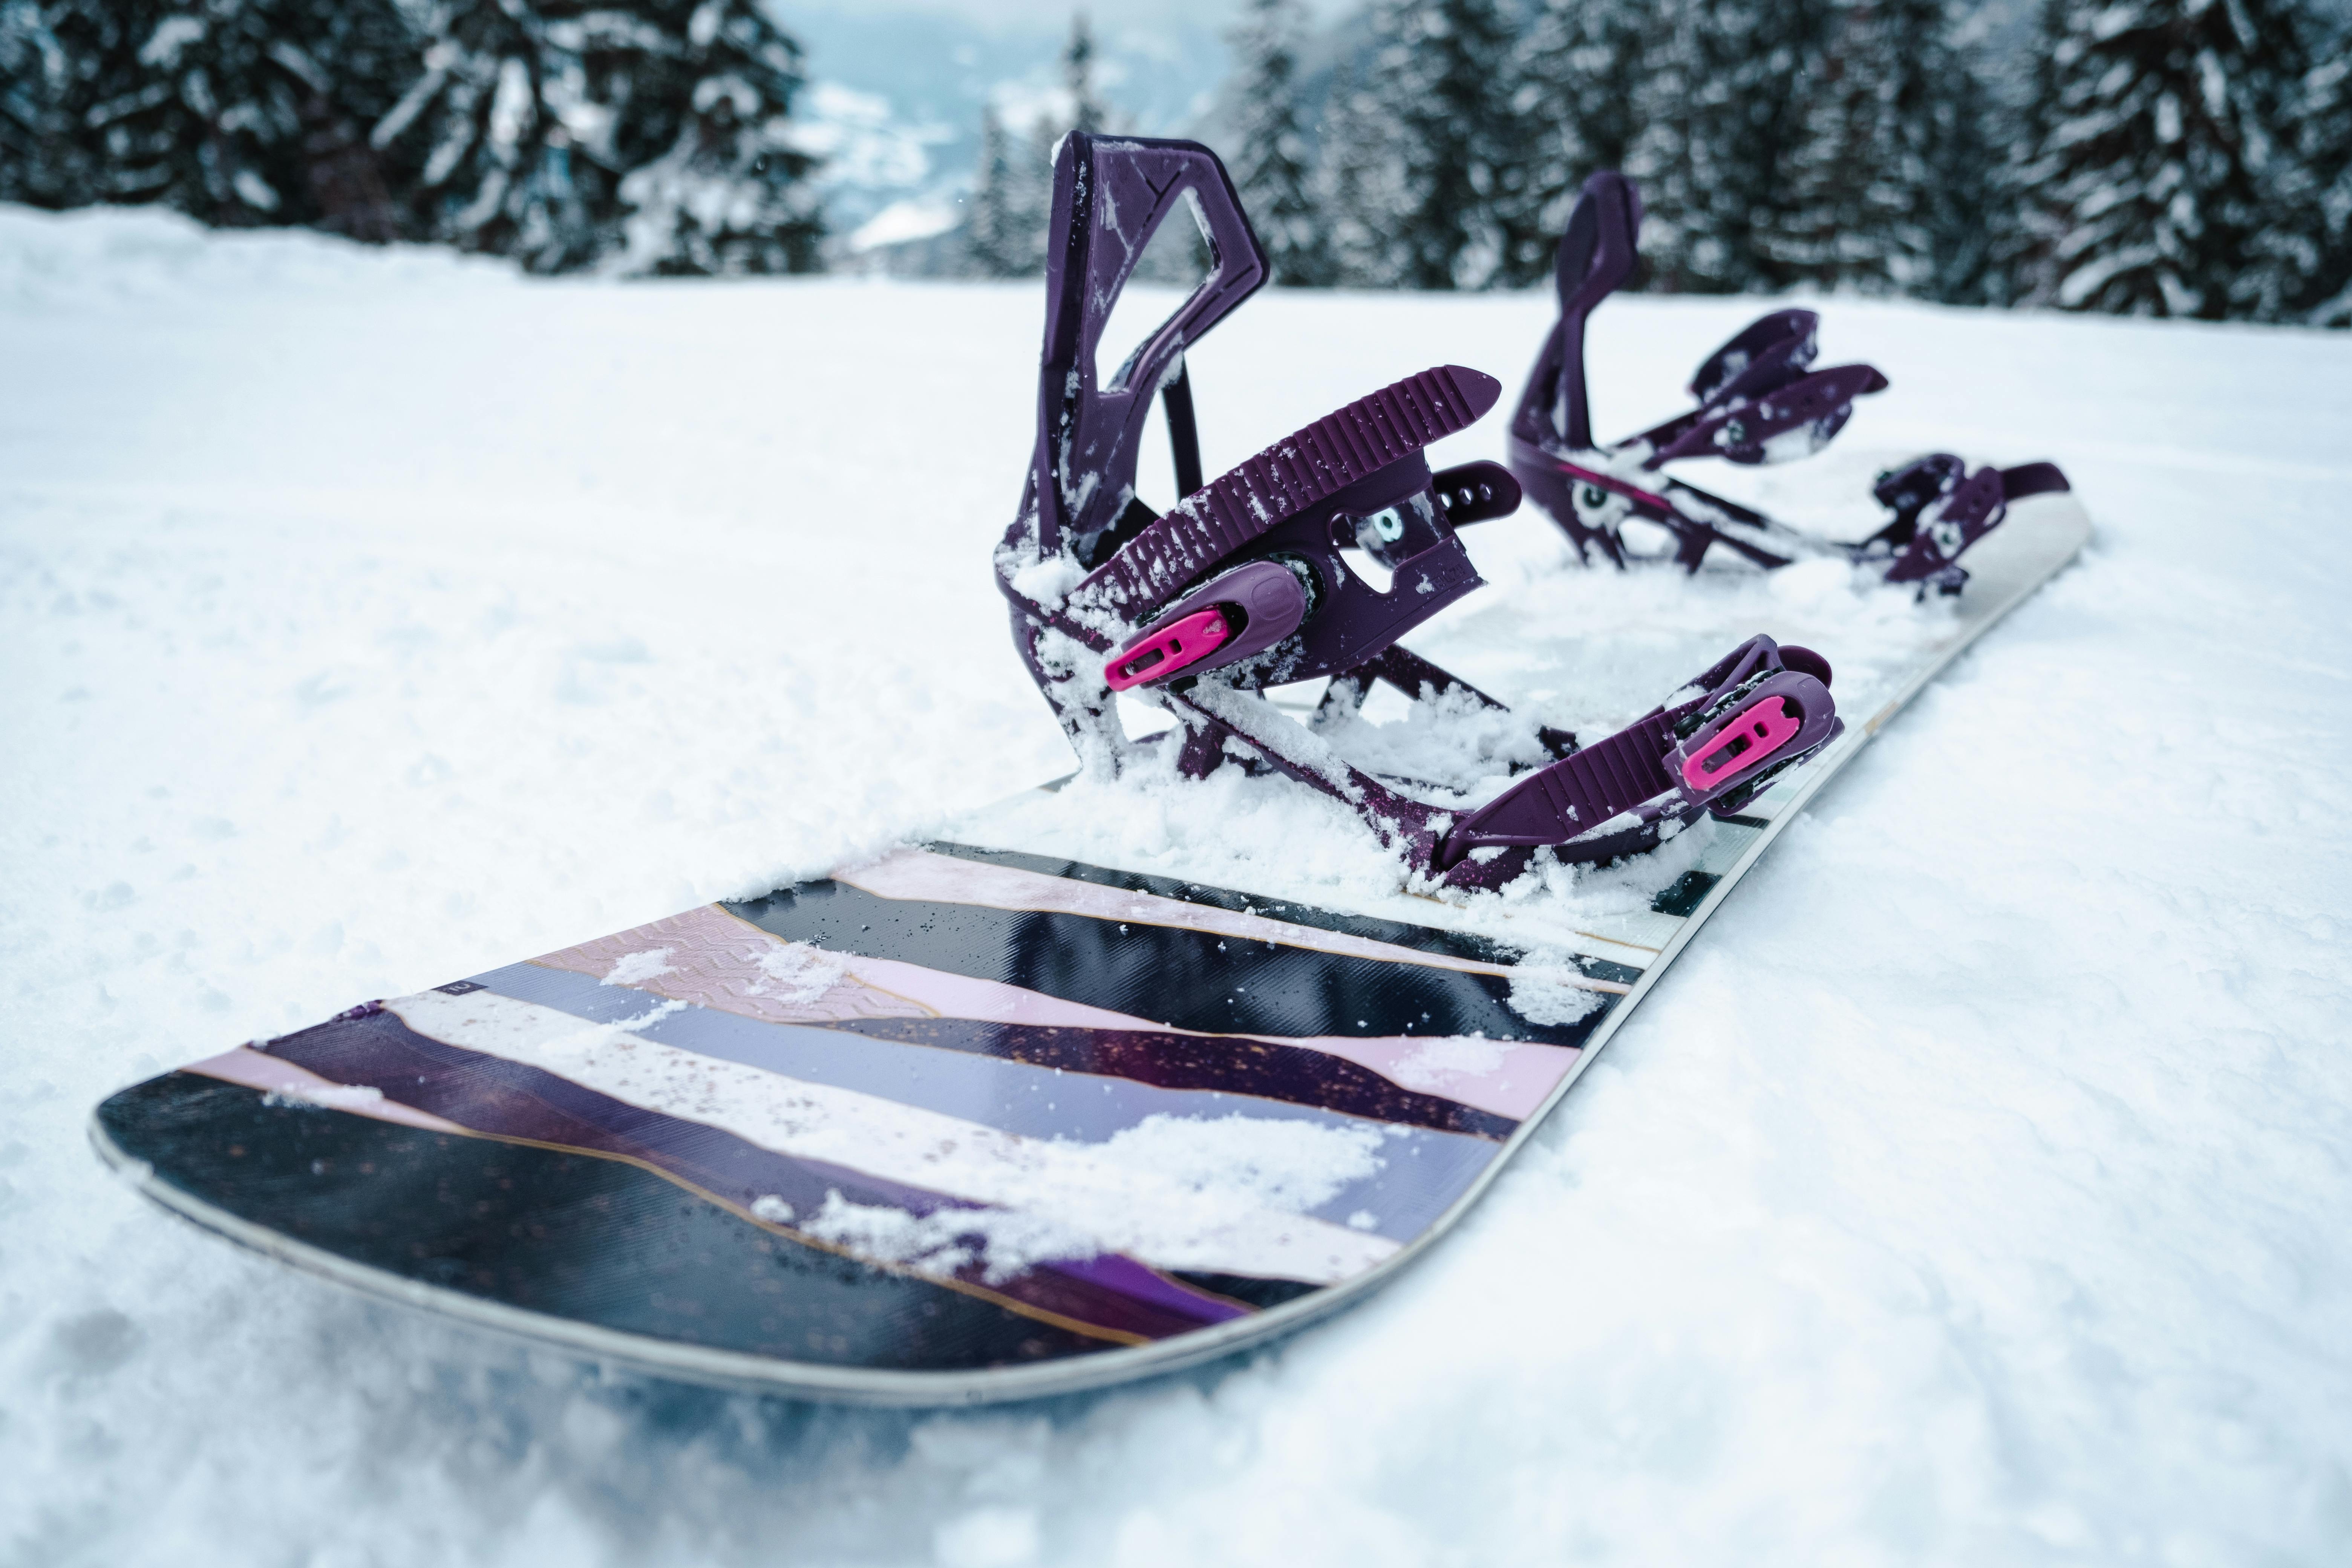 Women’s Snowboard Pants - SNB 100 Black